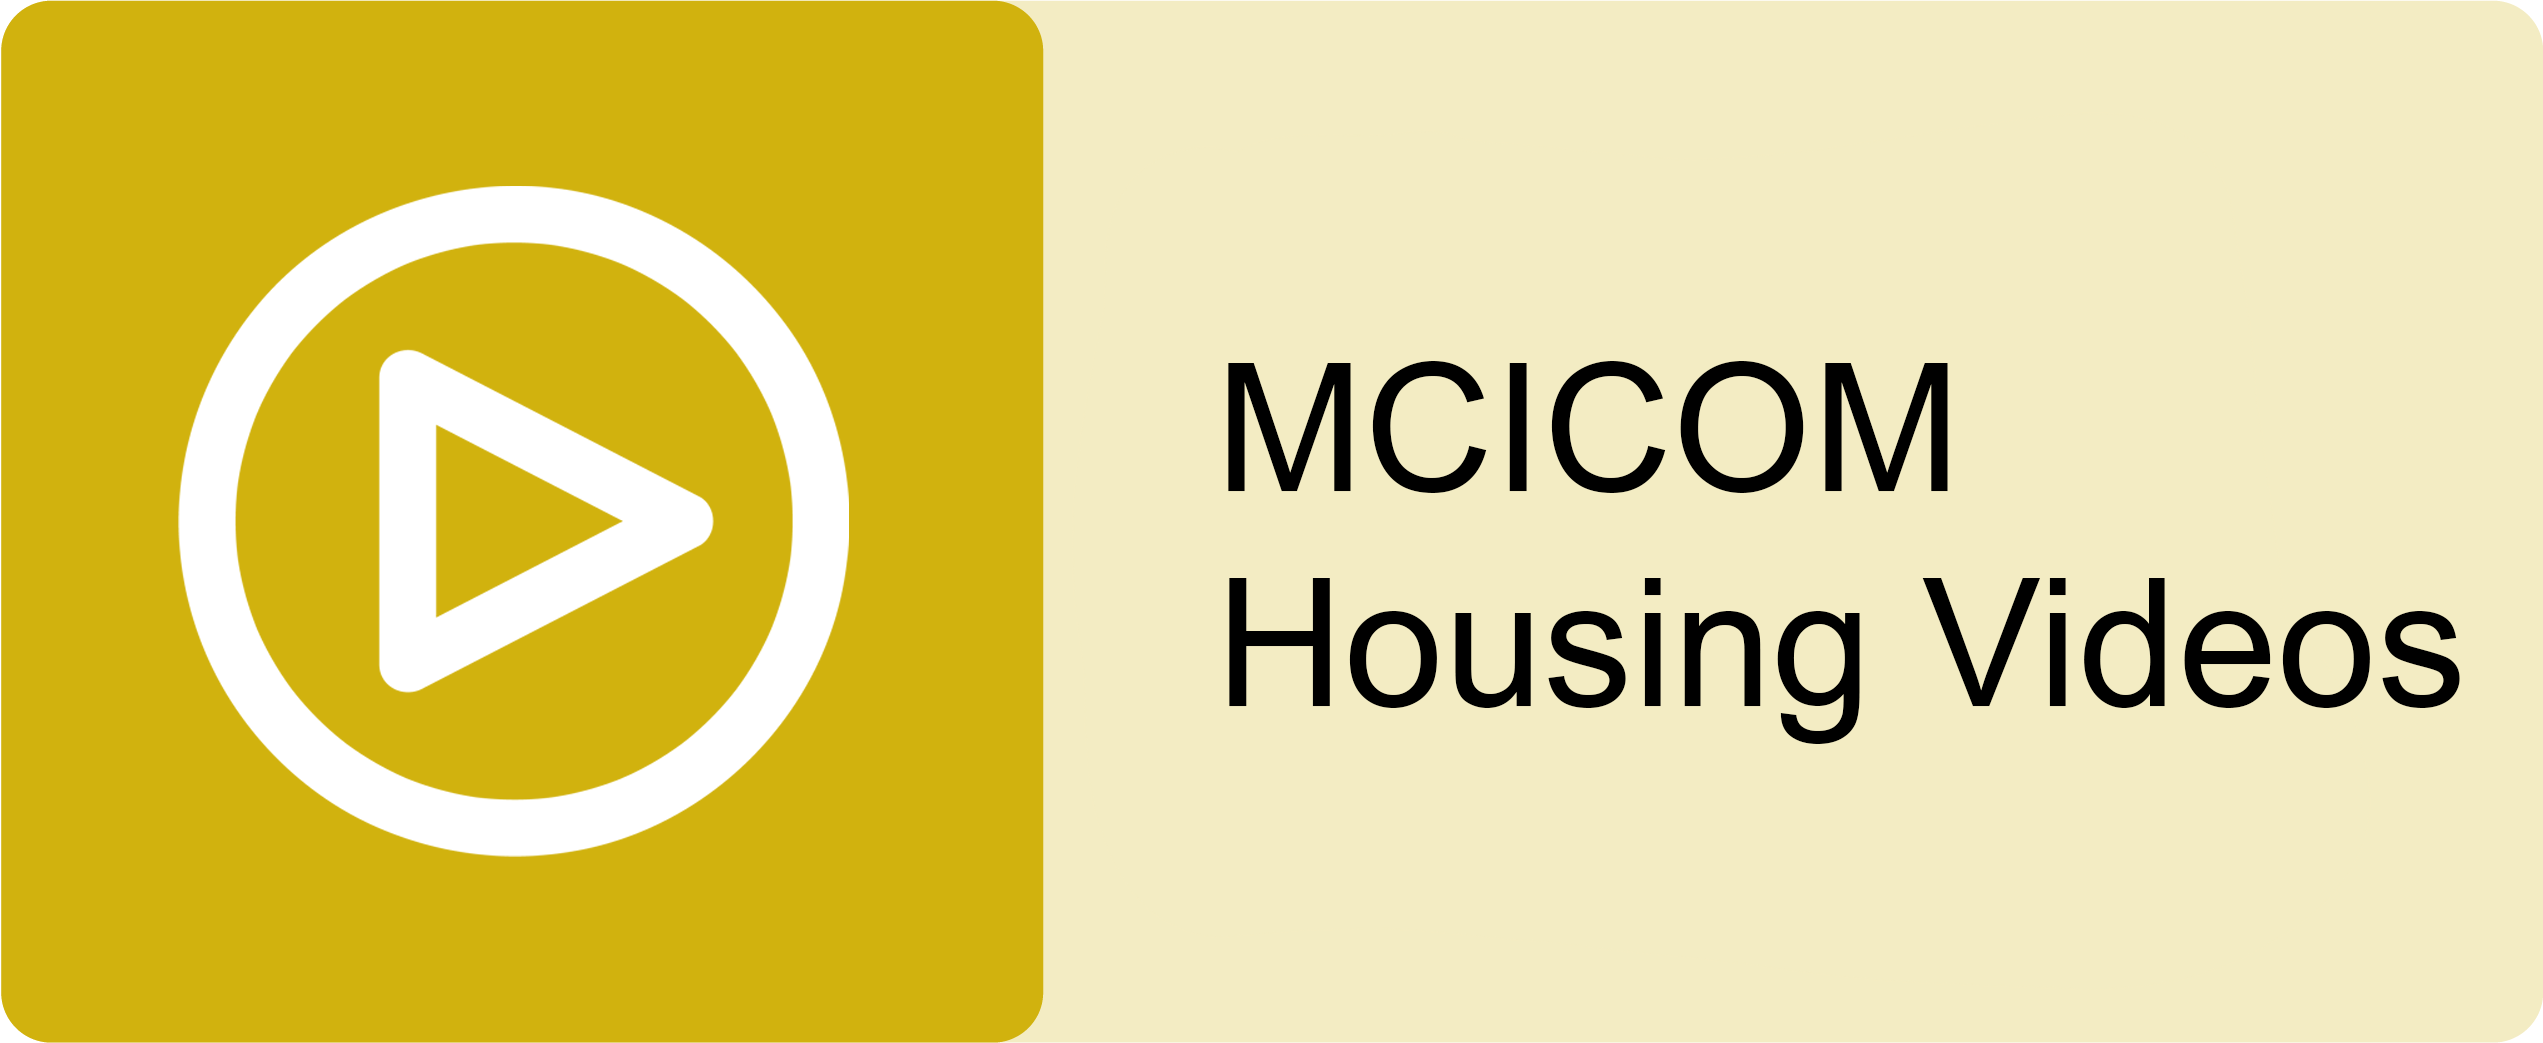 MCICOM Housing Videos